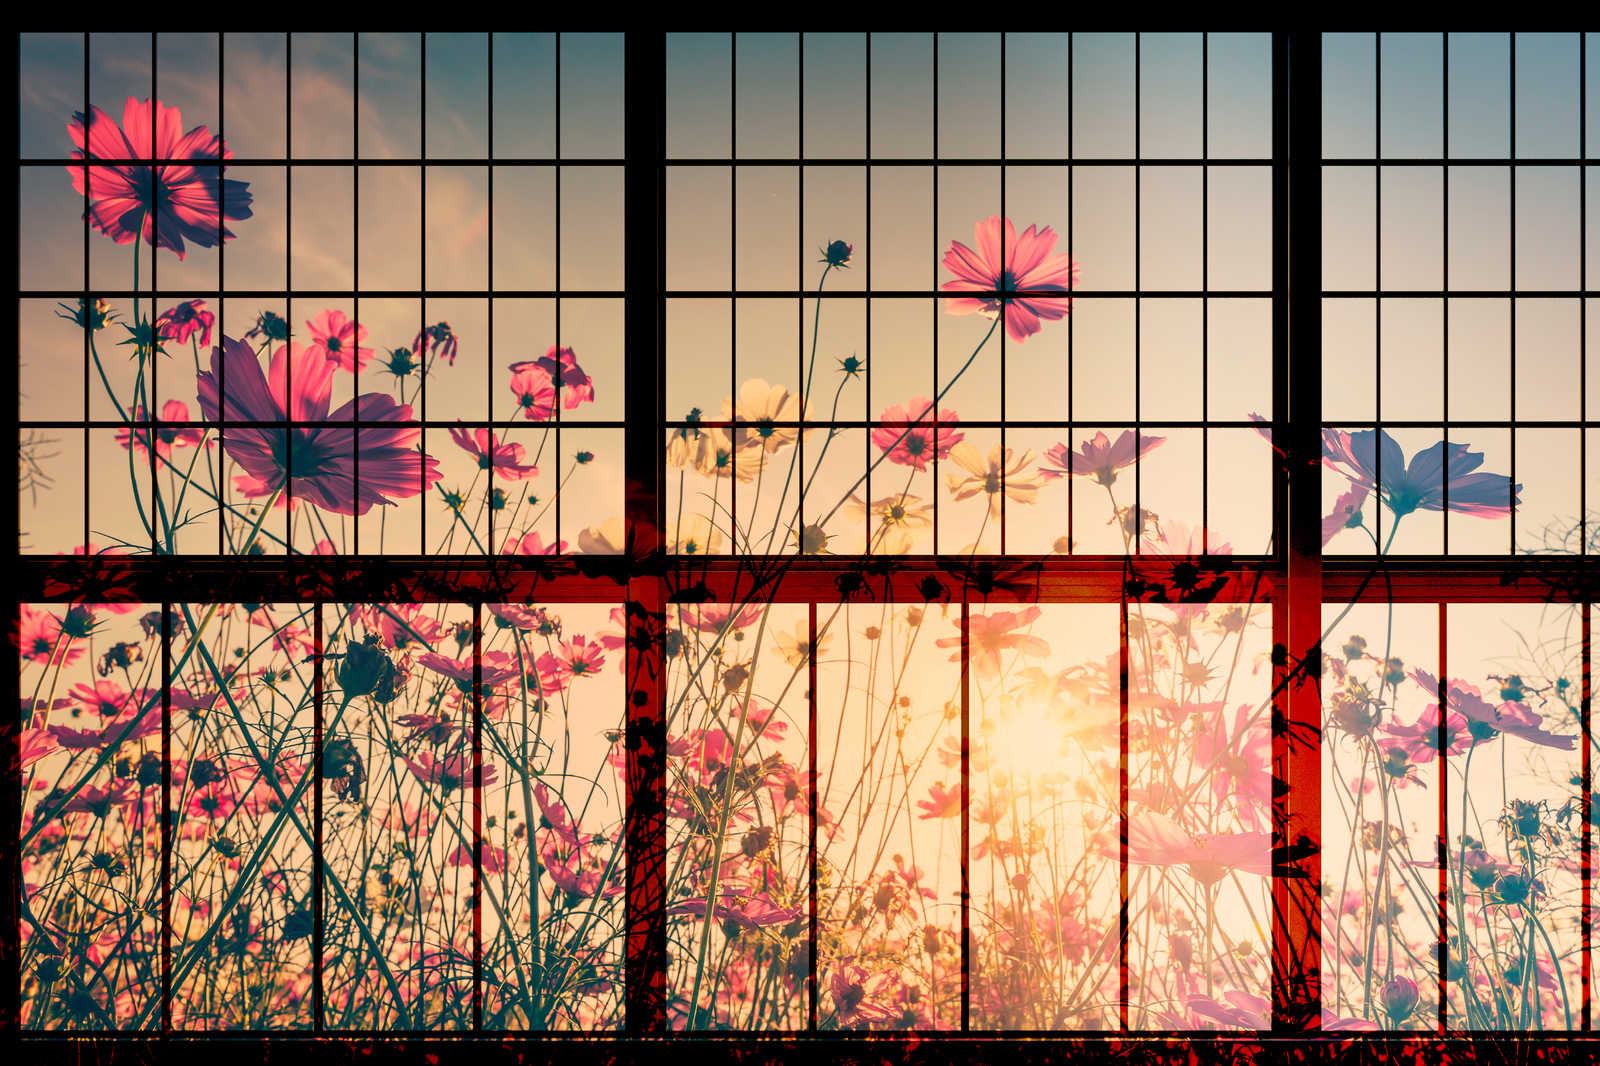             Meadow 1 - Fenêtre à croisillons toile avec pré fleuri - 0,90 m x 0,60 m
        